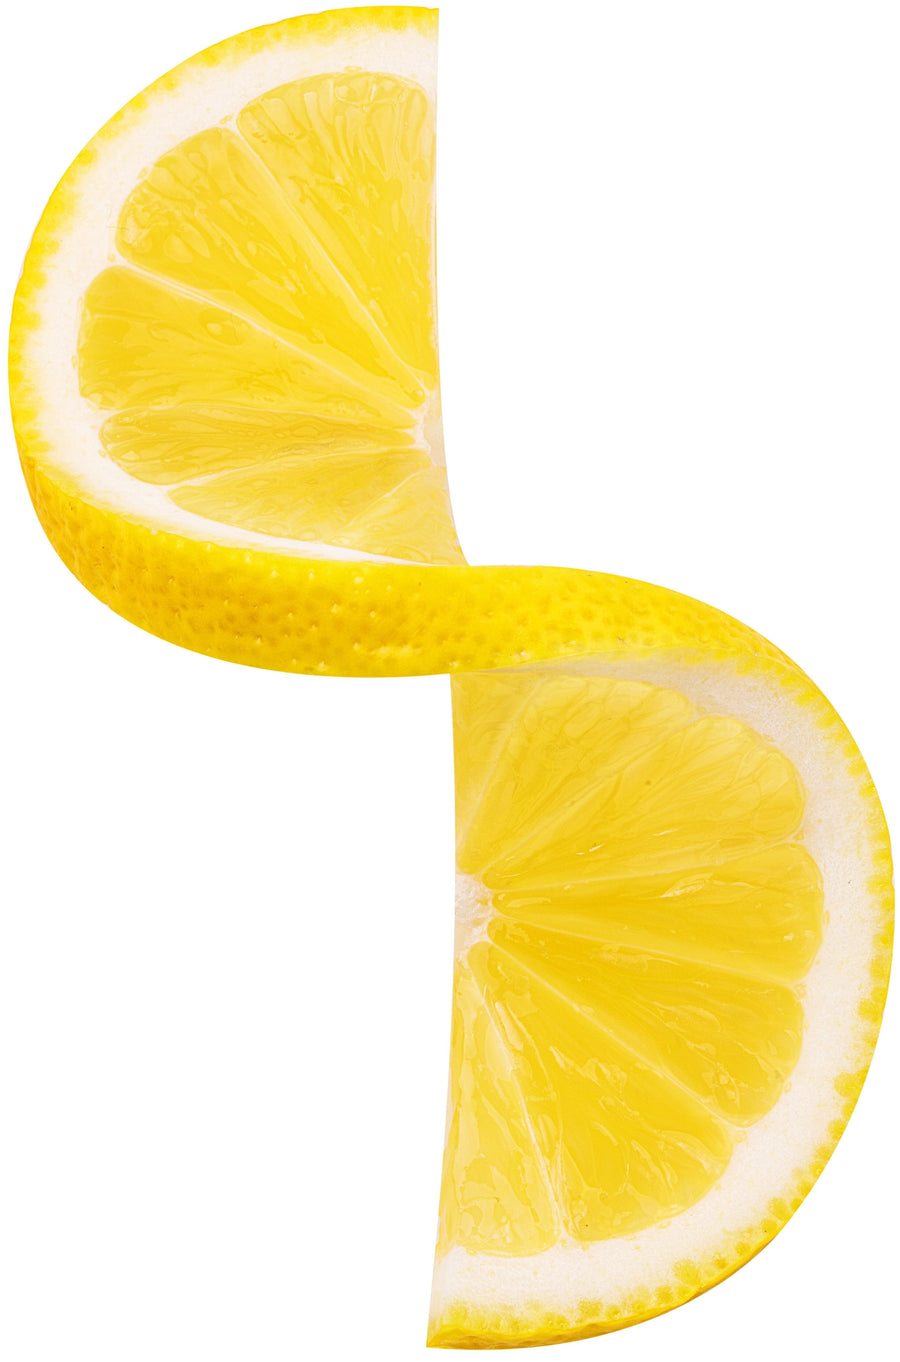 Image of one Lemon slice being twisted in midair.